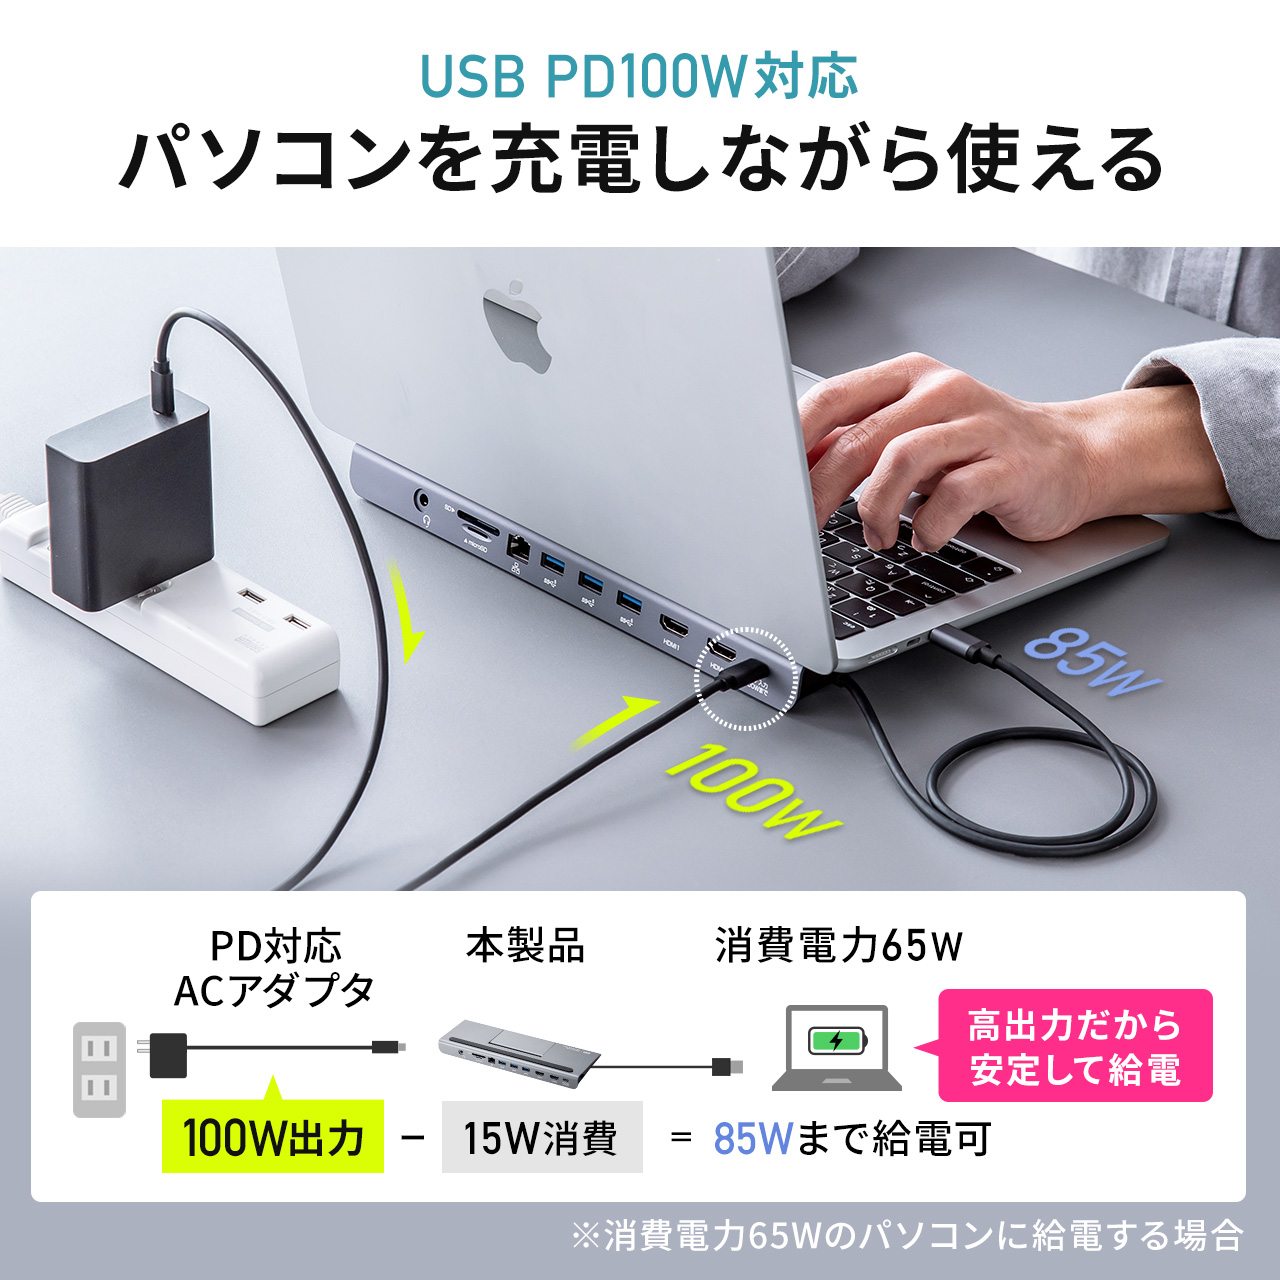 ドッキングステーション HDMI 2つ 2画面 出力 4K 高解像度 高画質 USB Type-C接続 USB PD100W対応 11in1 ノートPCスタンド ケーブル一体型 400-VGA017N